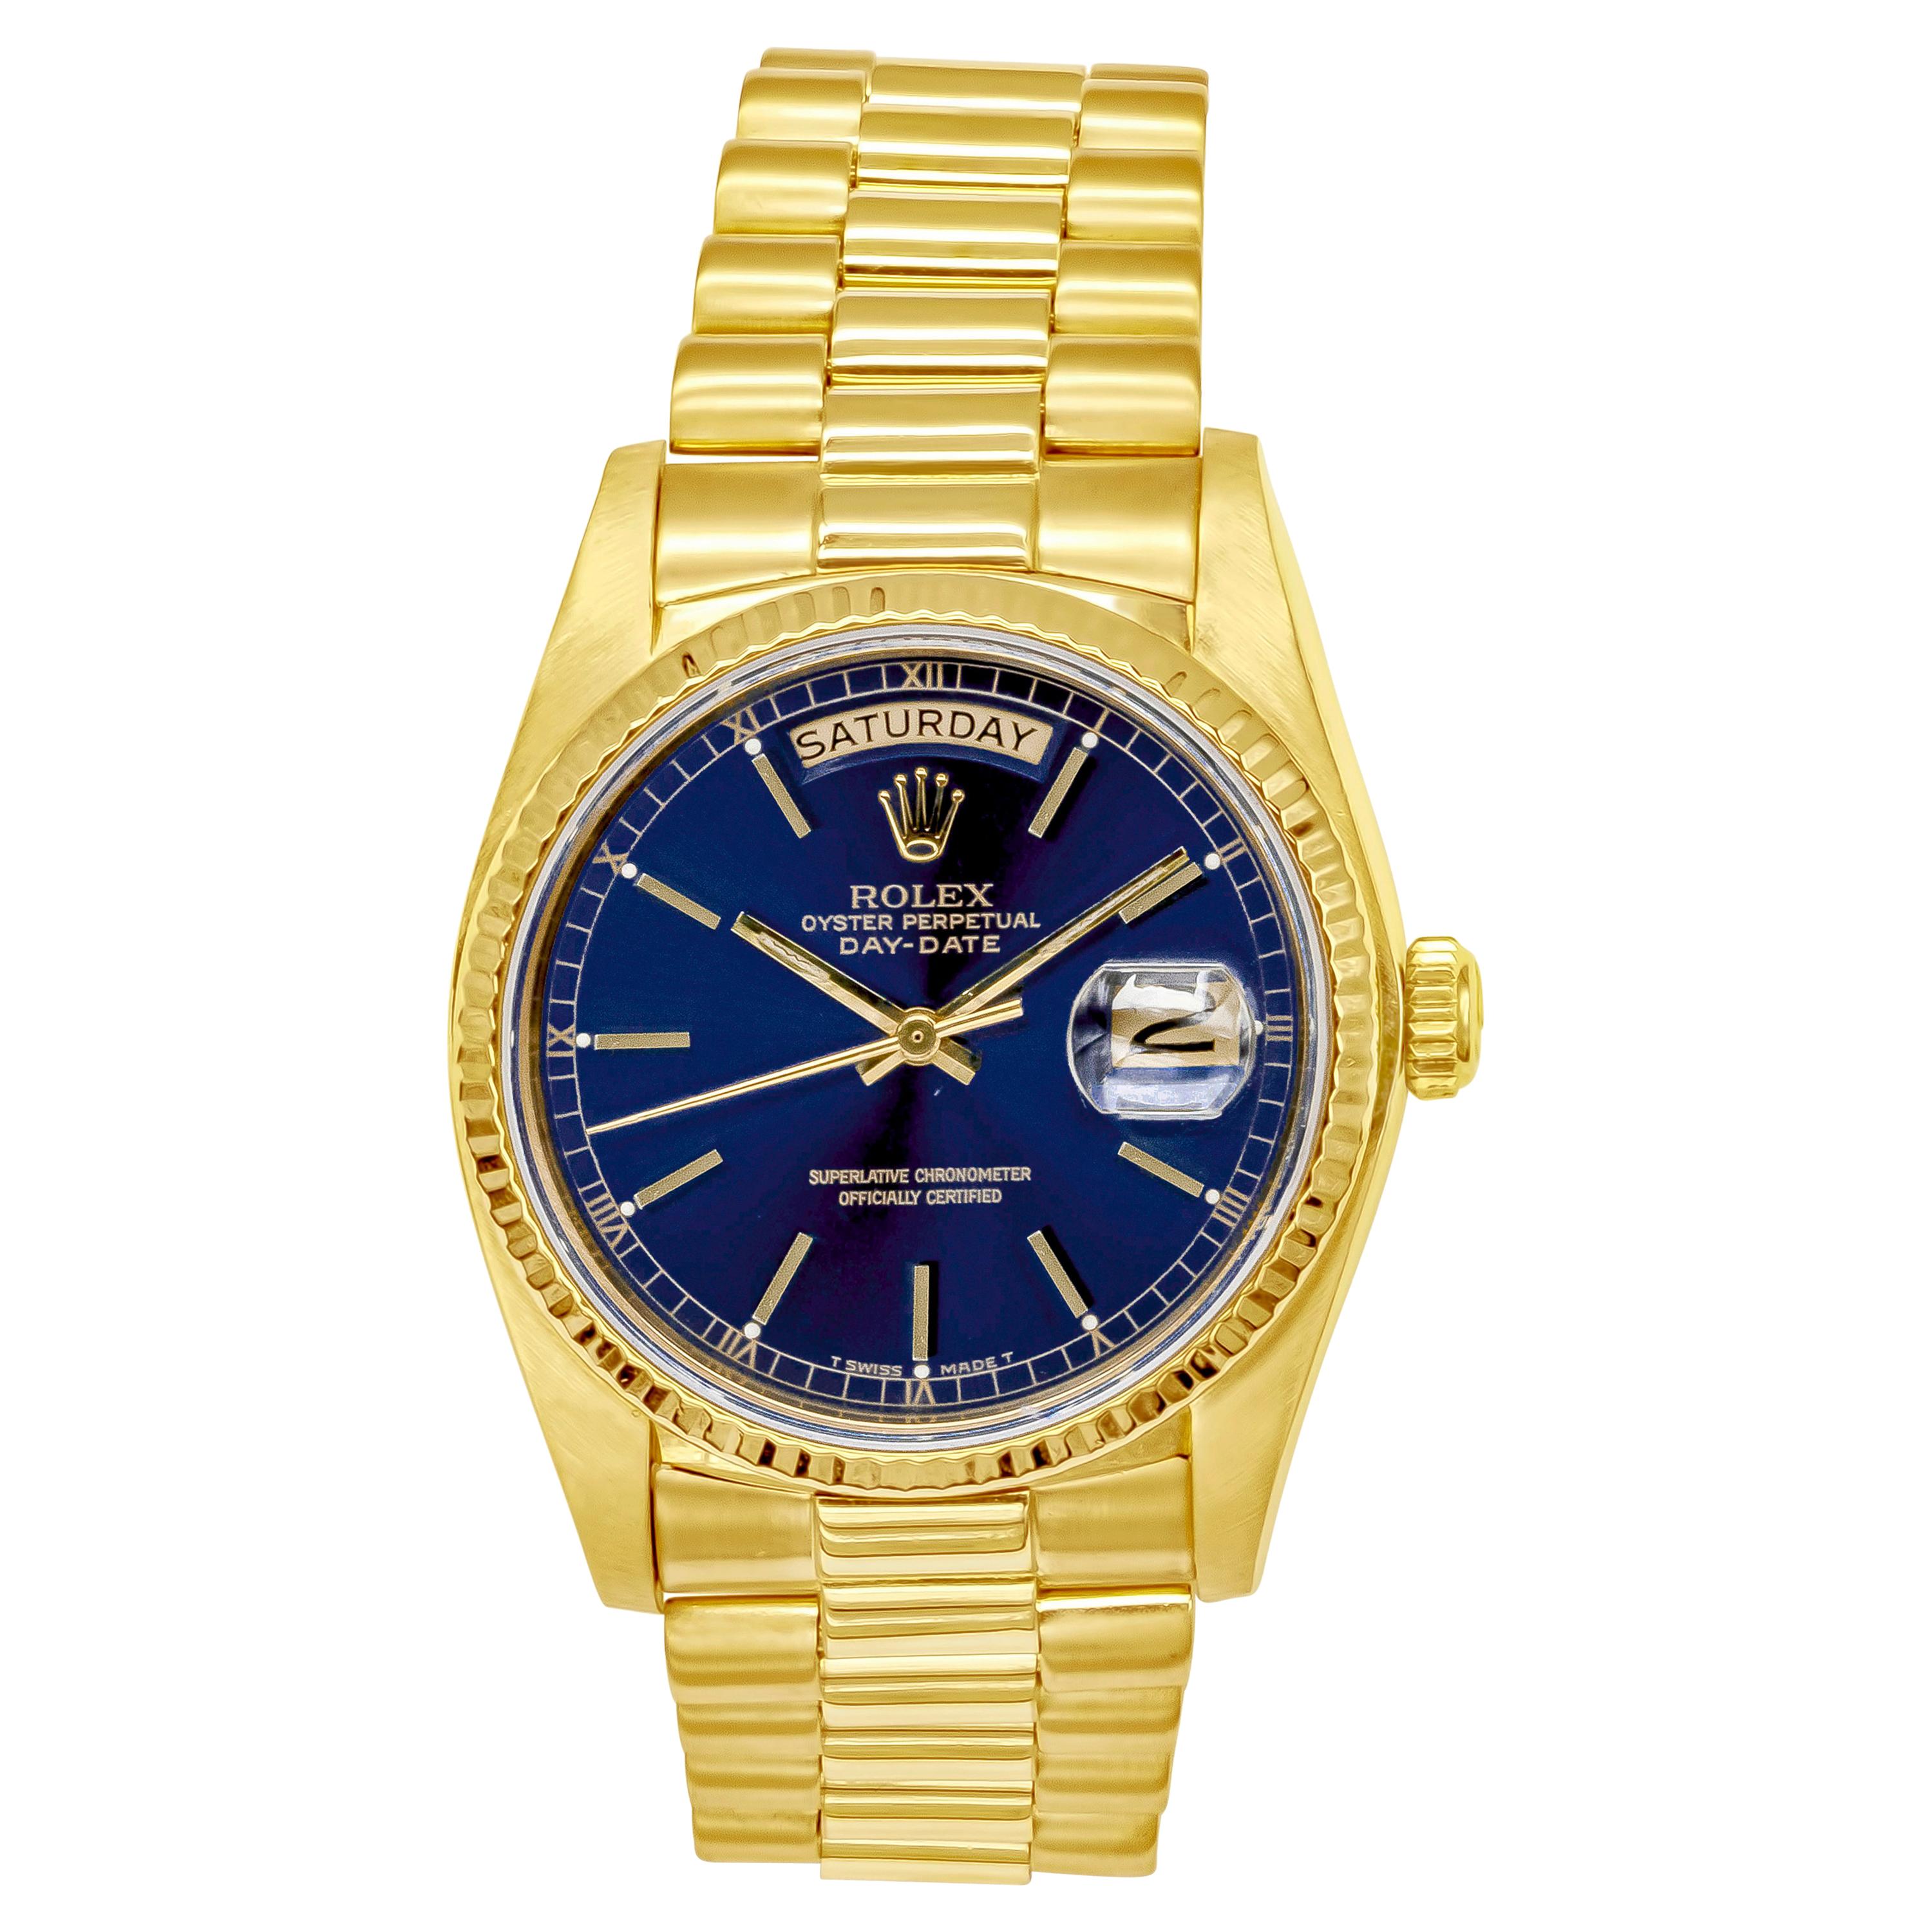 Montre-bracelet President Day-Date de Rolex en or jaune, réf. 18038, 1982